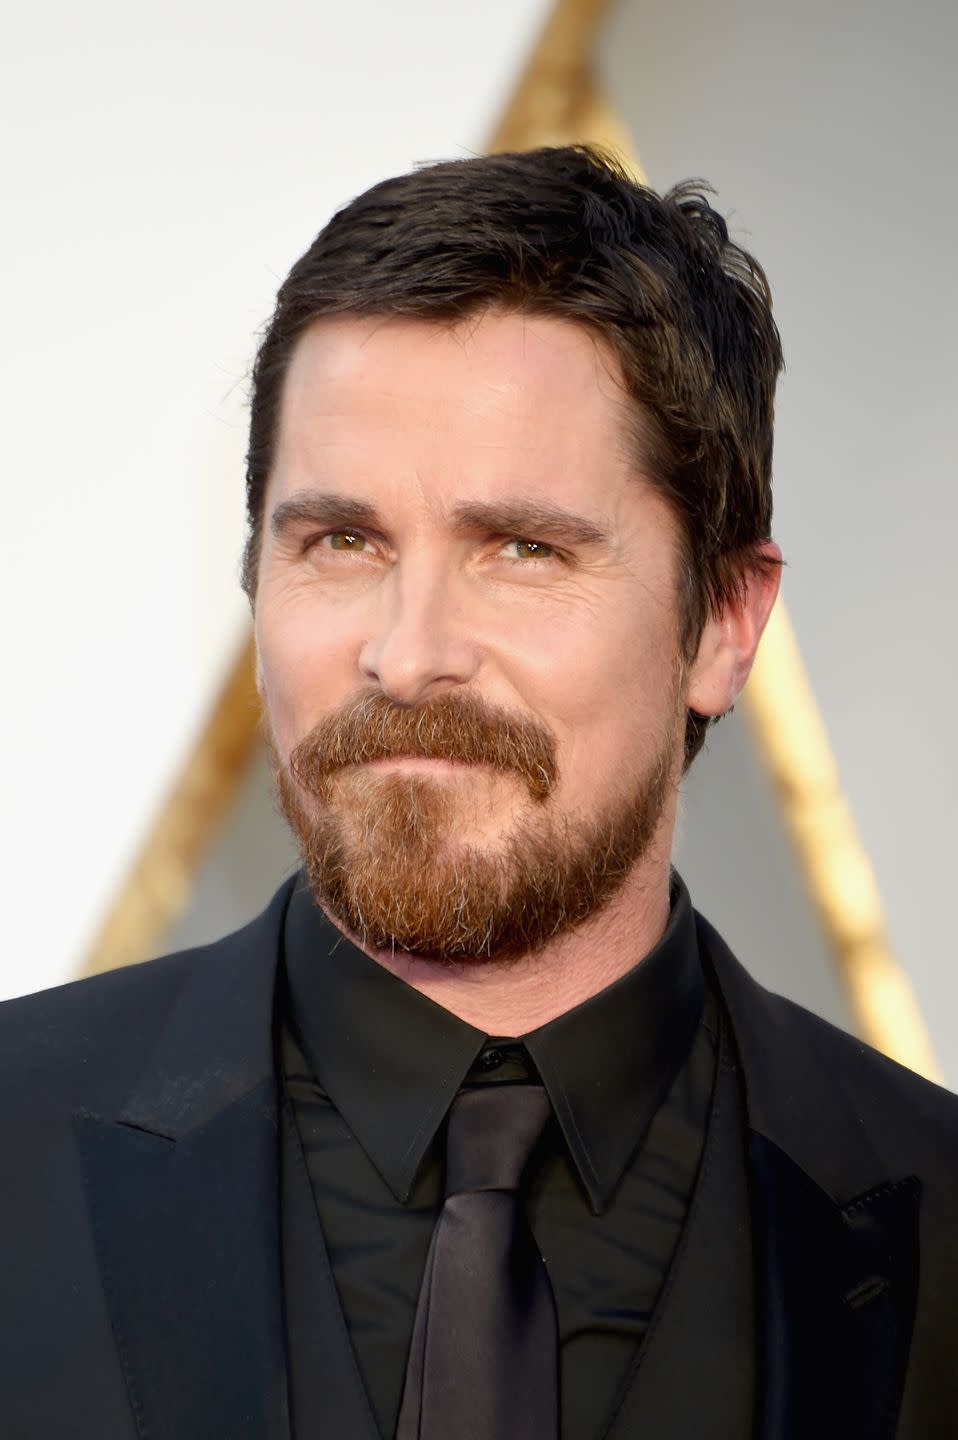 Christian Bale as Jack Kelly in 'Newsies'